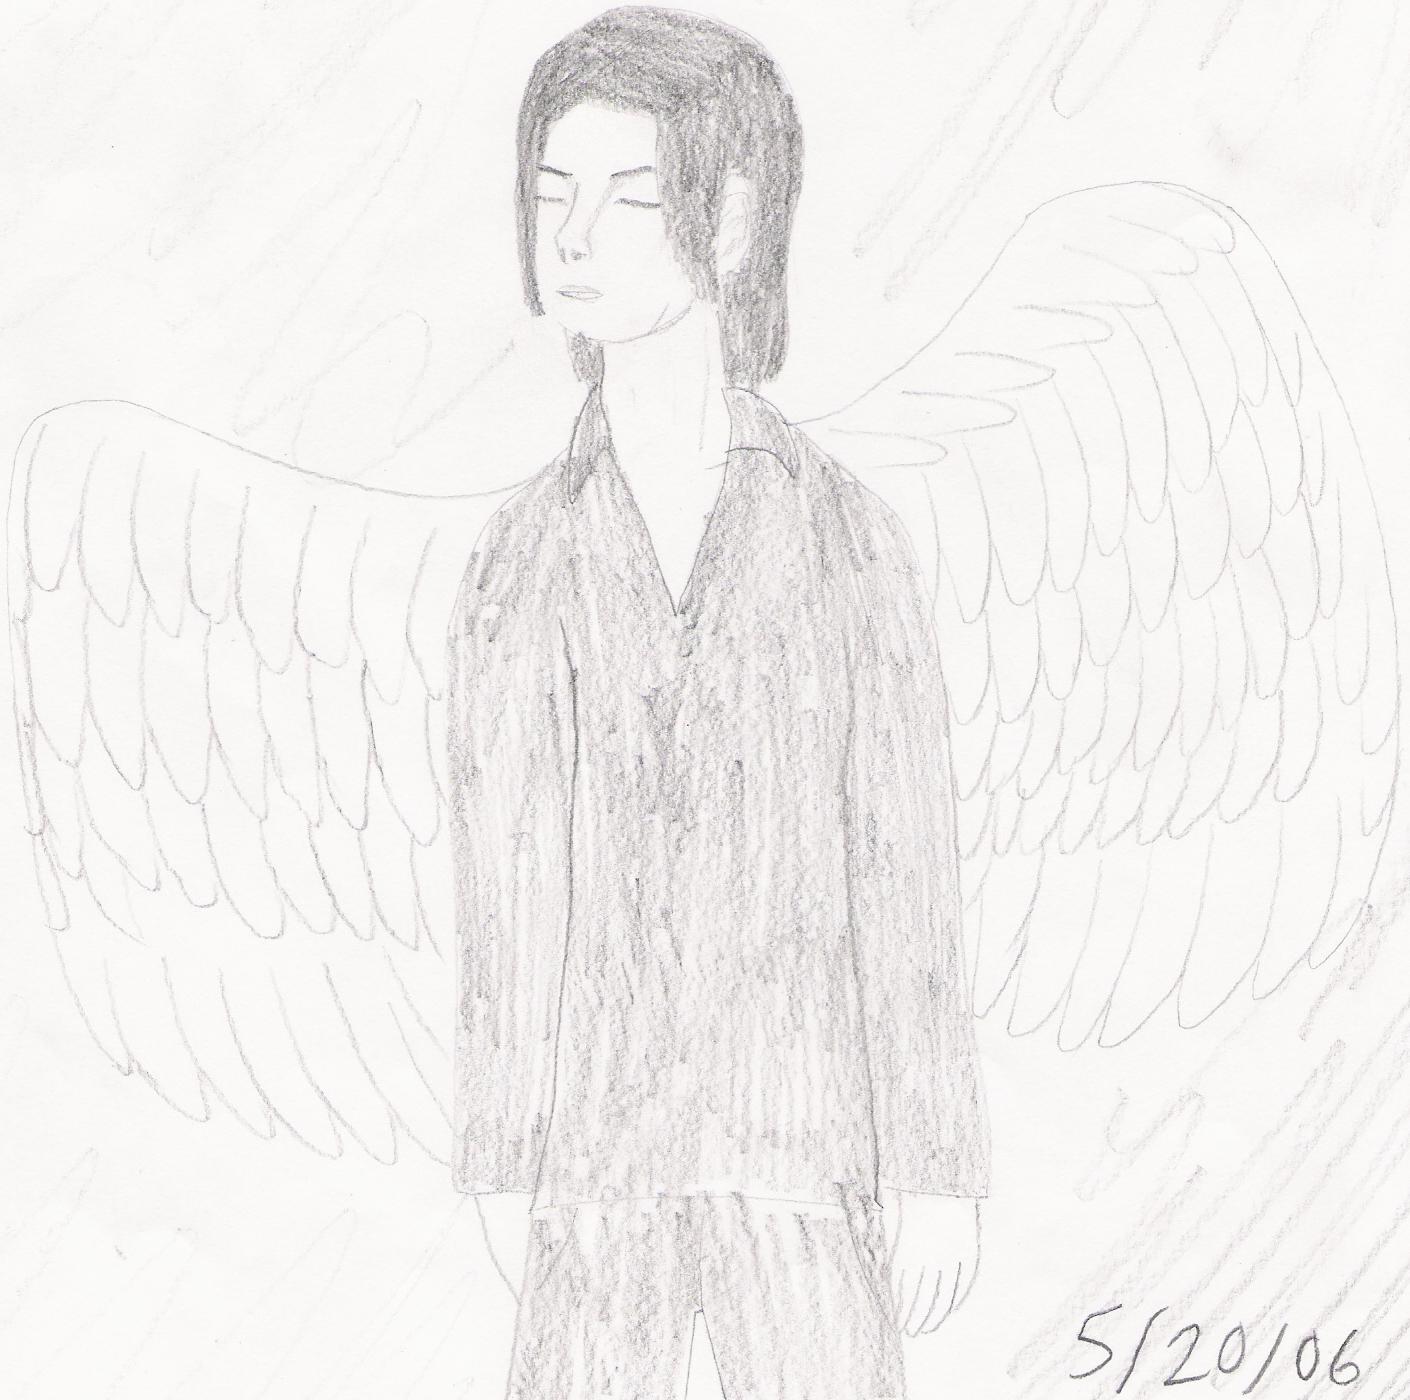 Michael's wings by MoonWalker82958